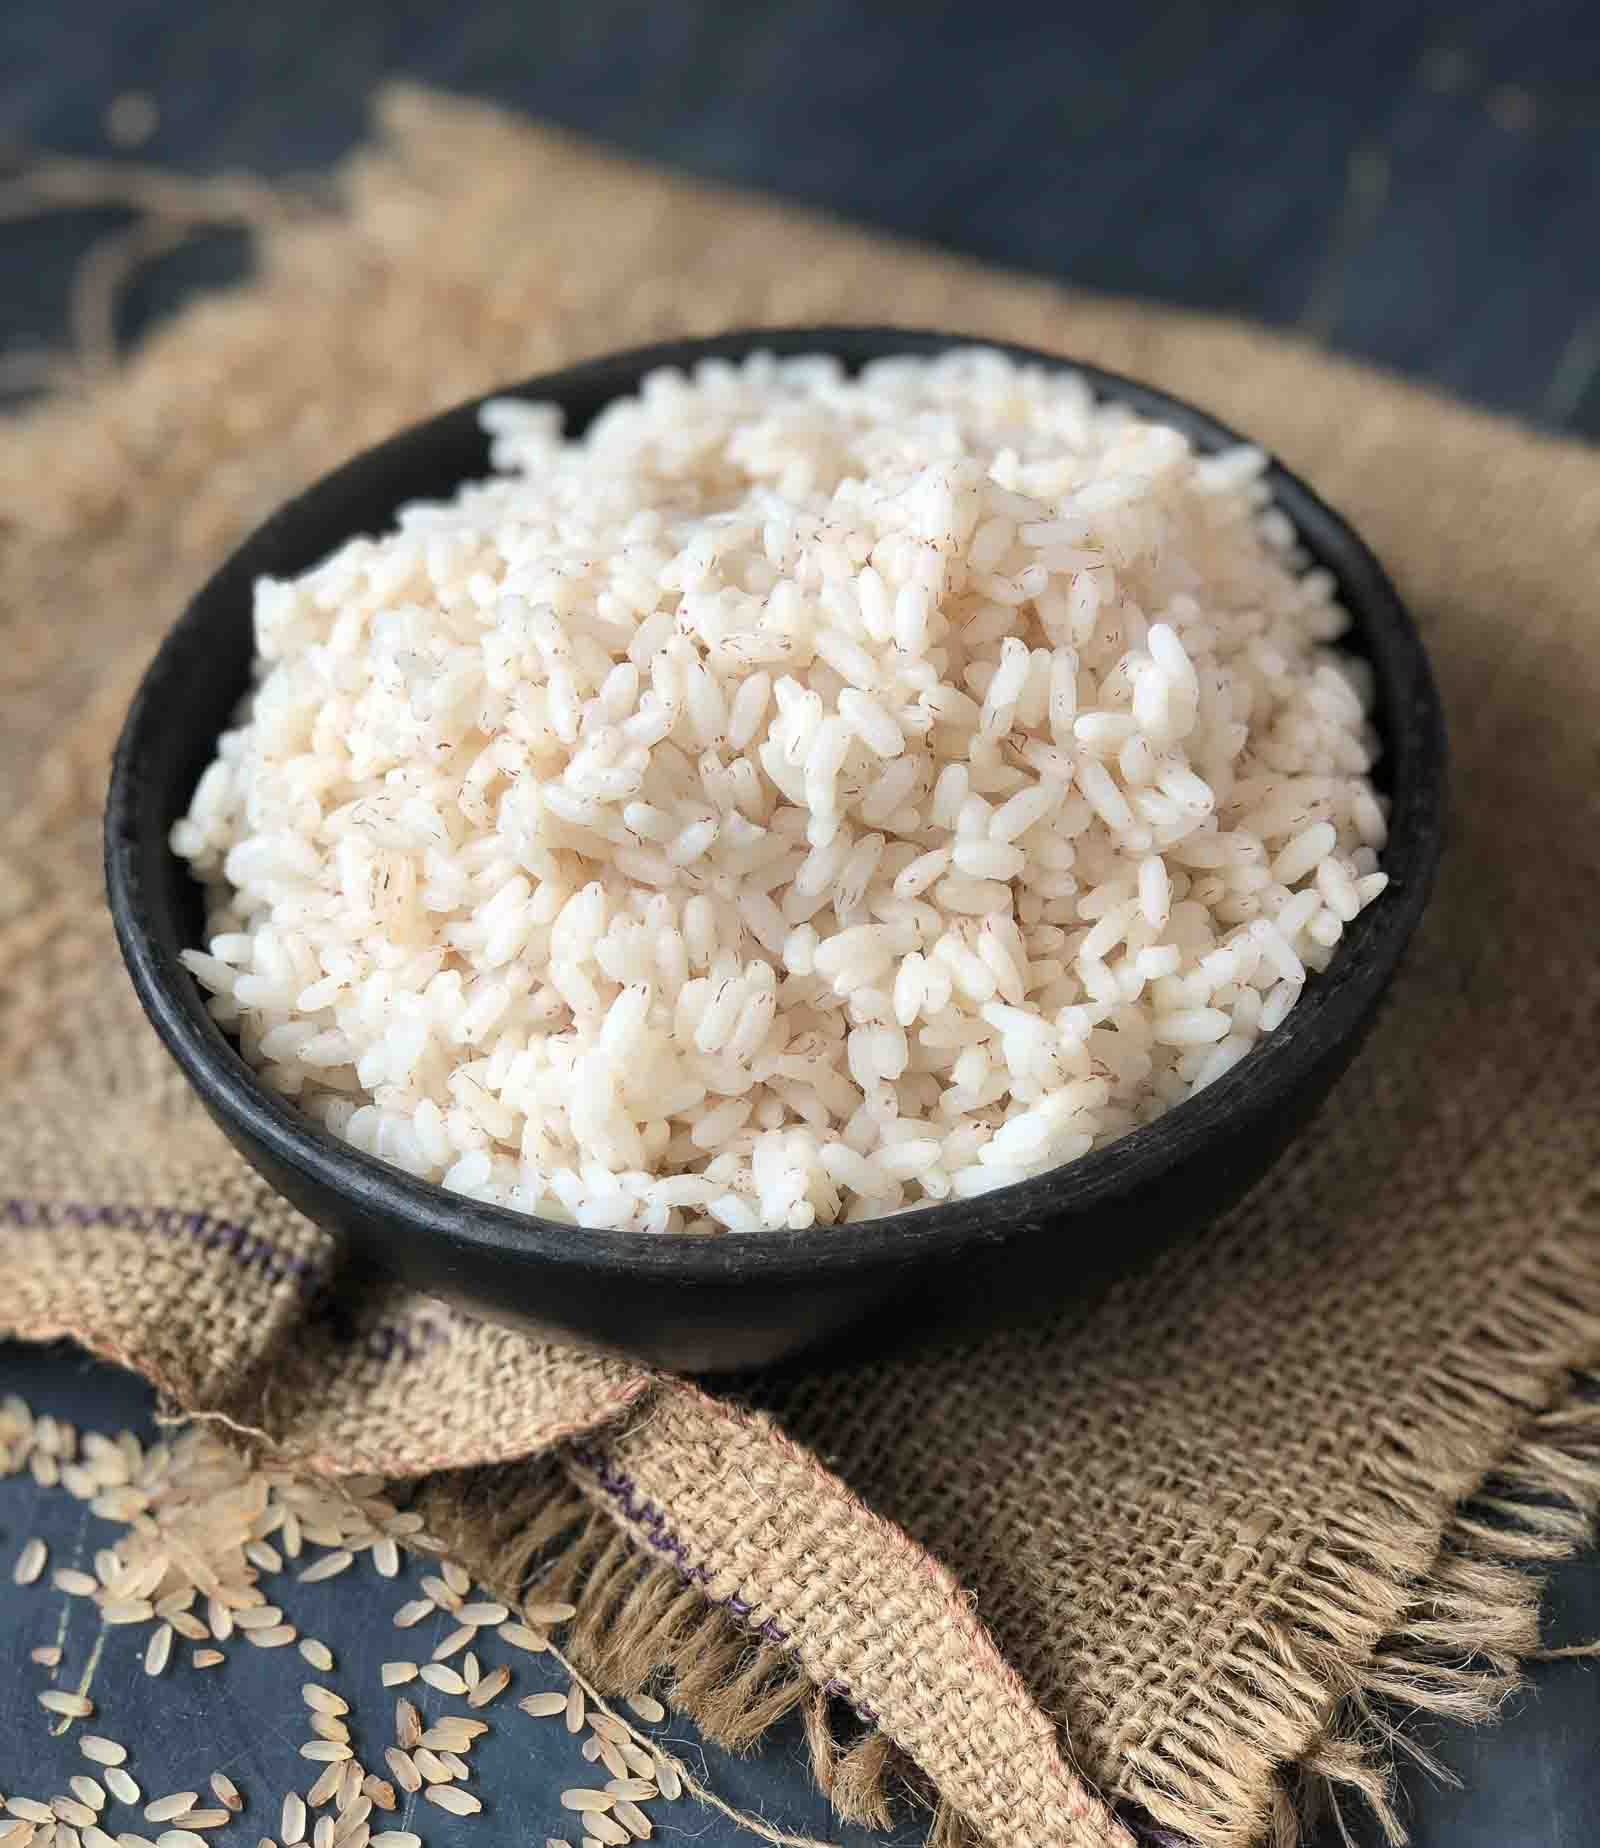 Matta Rice/ Chemba Rice Recipe-Pressure Cooker Method